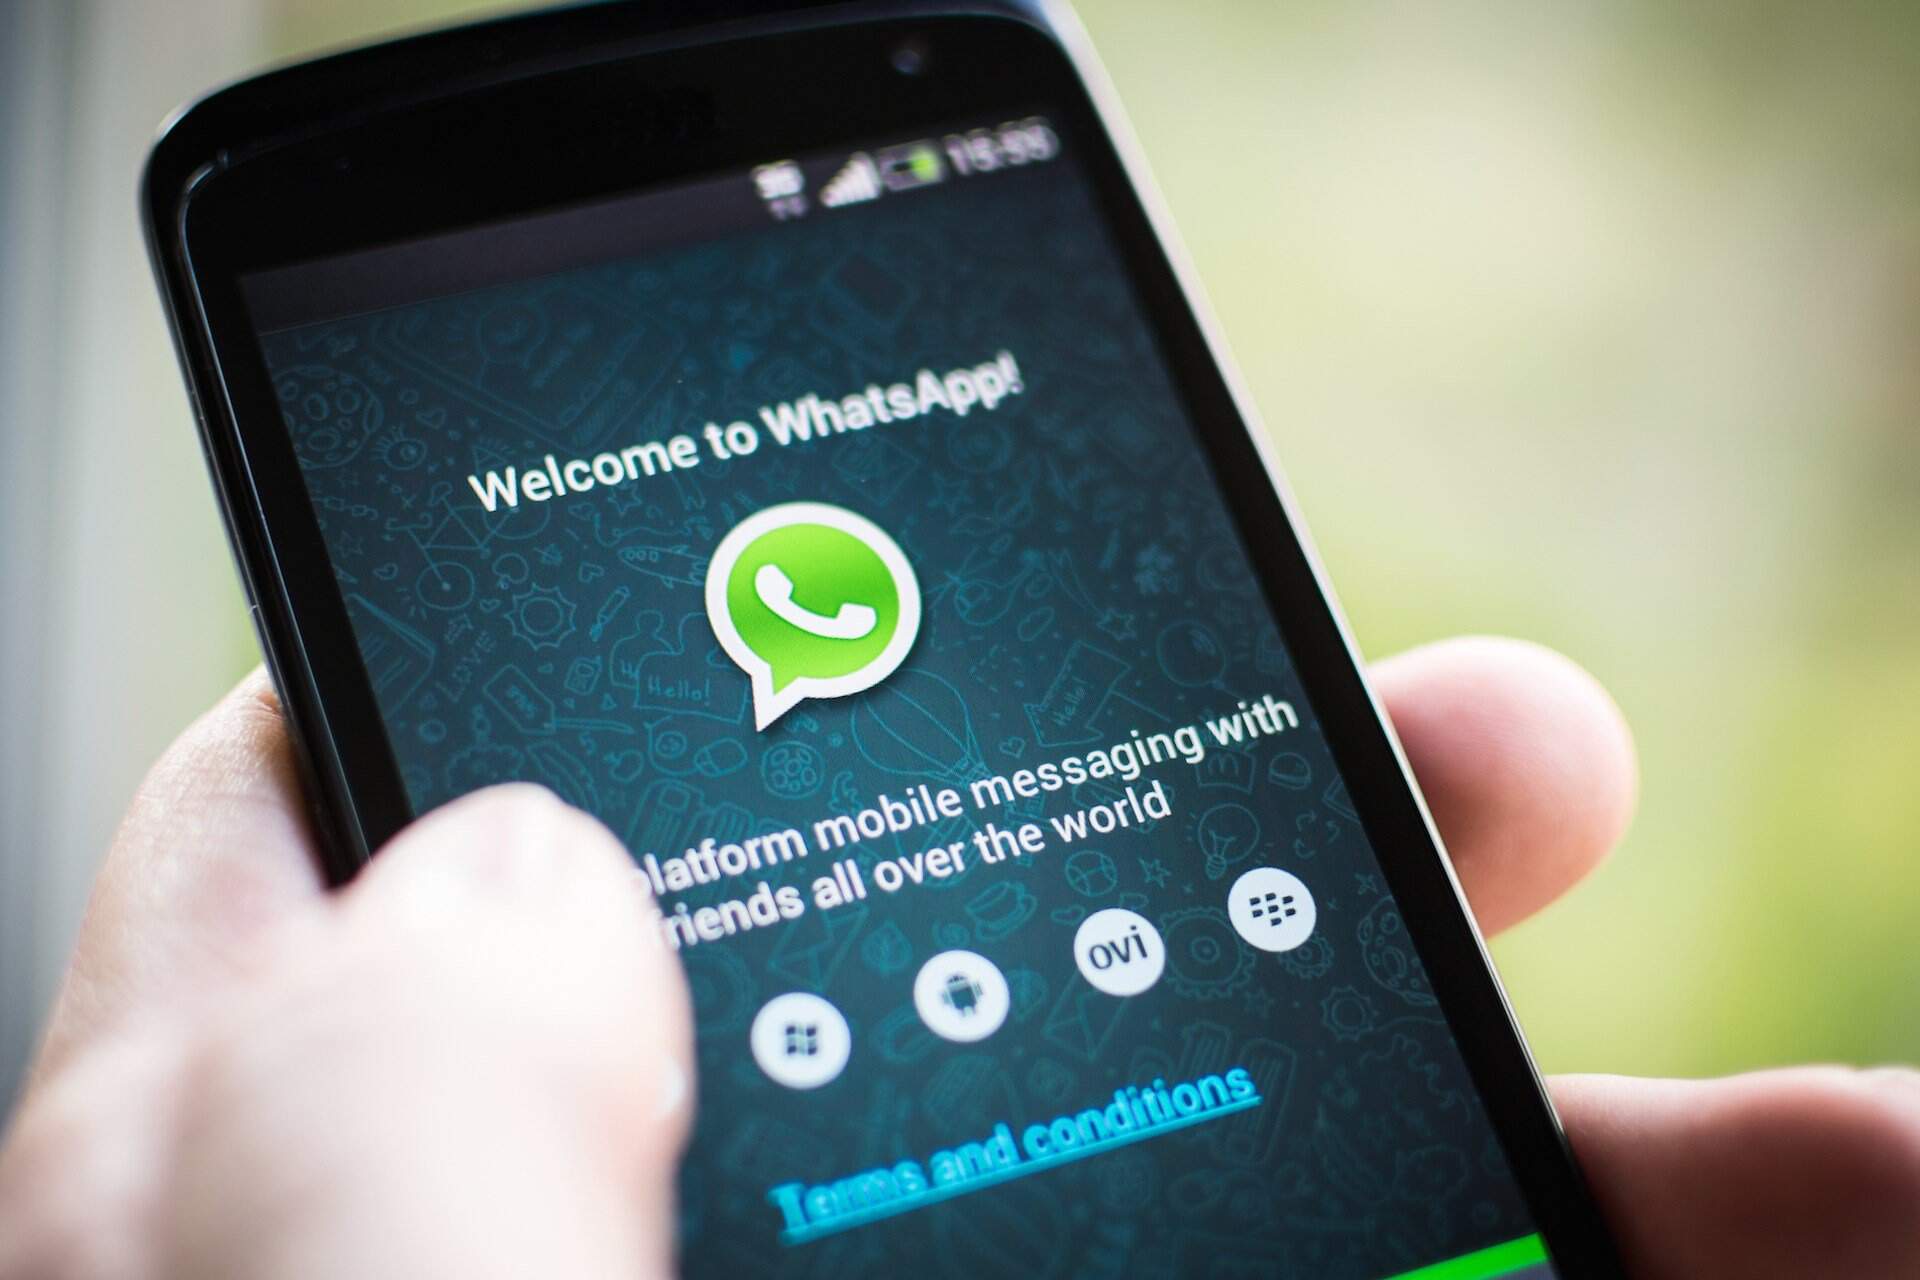 WhatsApp bloqueado: decisão desproporcional prejudica o consumidor